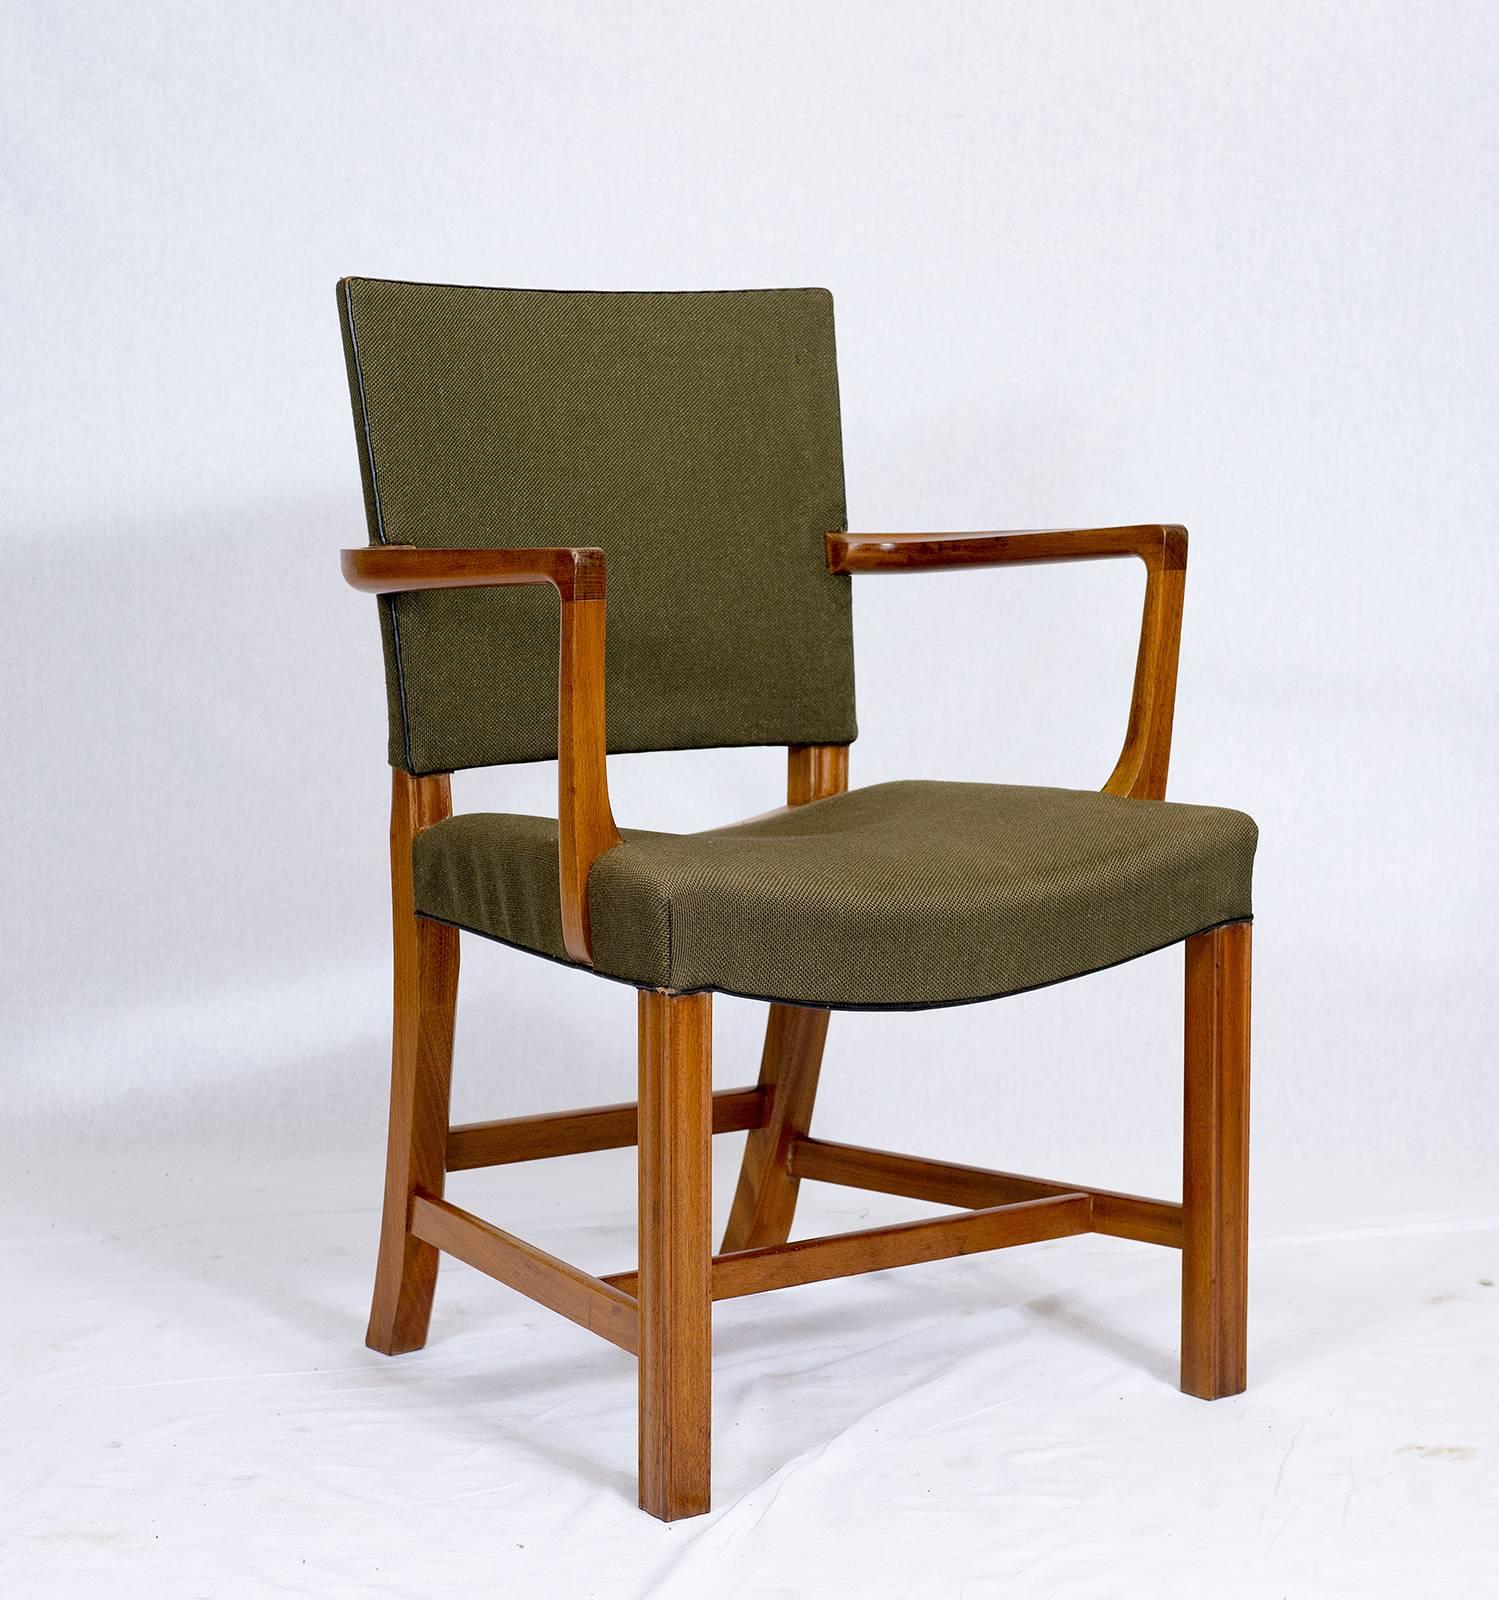 Paire de fauteuils Kaare Klint conçus en 1927 et produits par Rud Rasmussen.   Magasin anciennement connu sous le nom de ARTFUL DODGER INC.